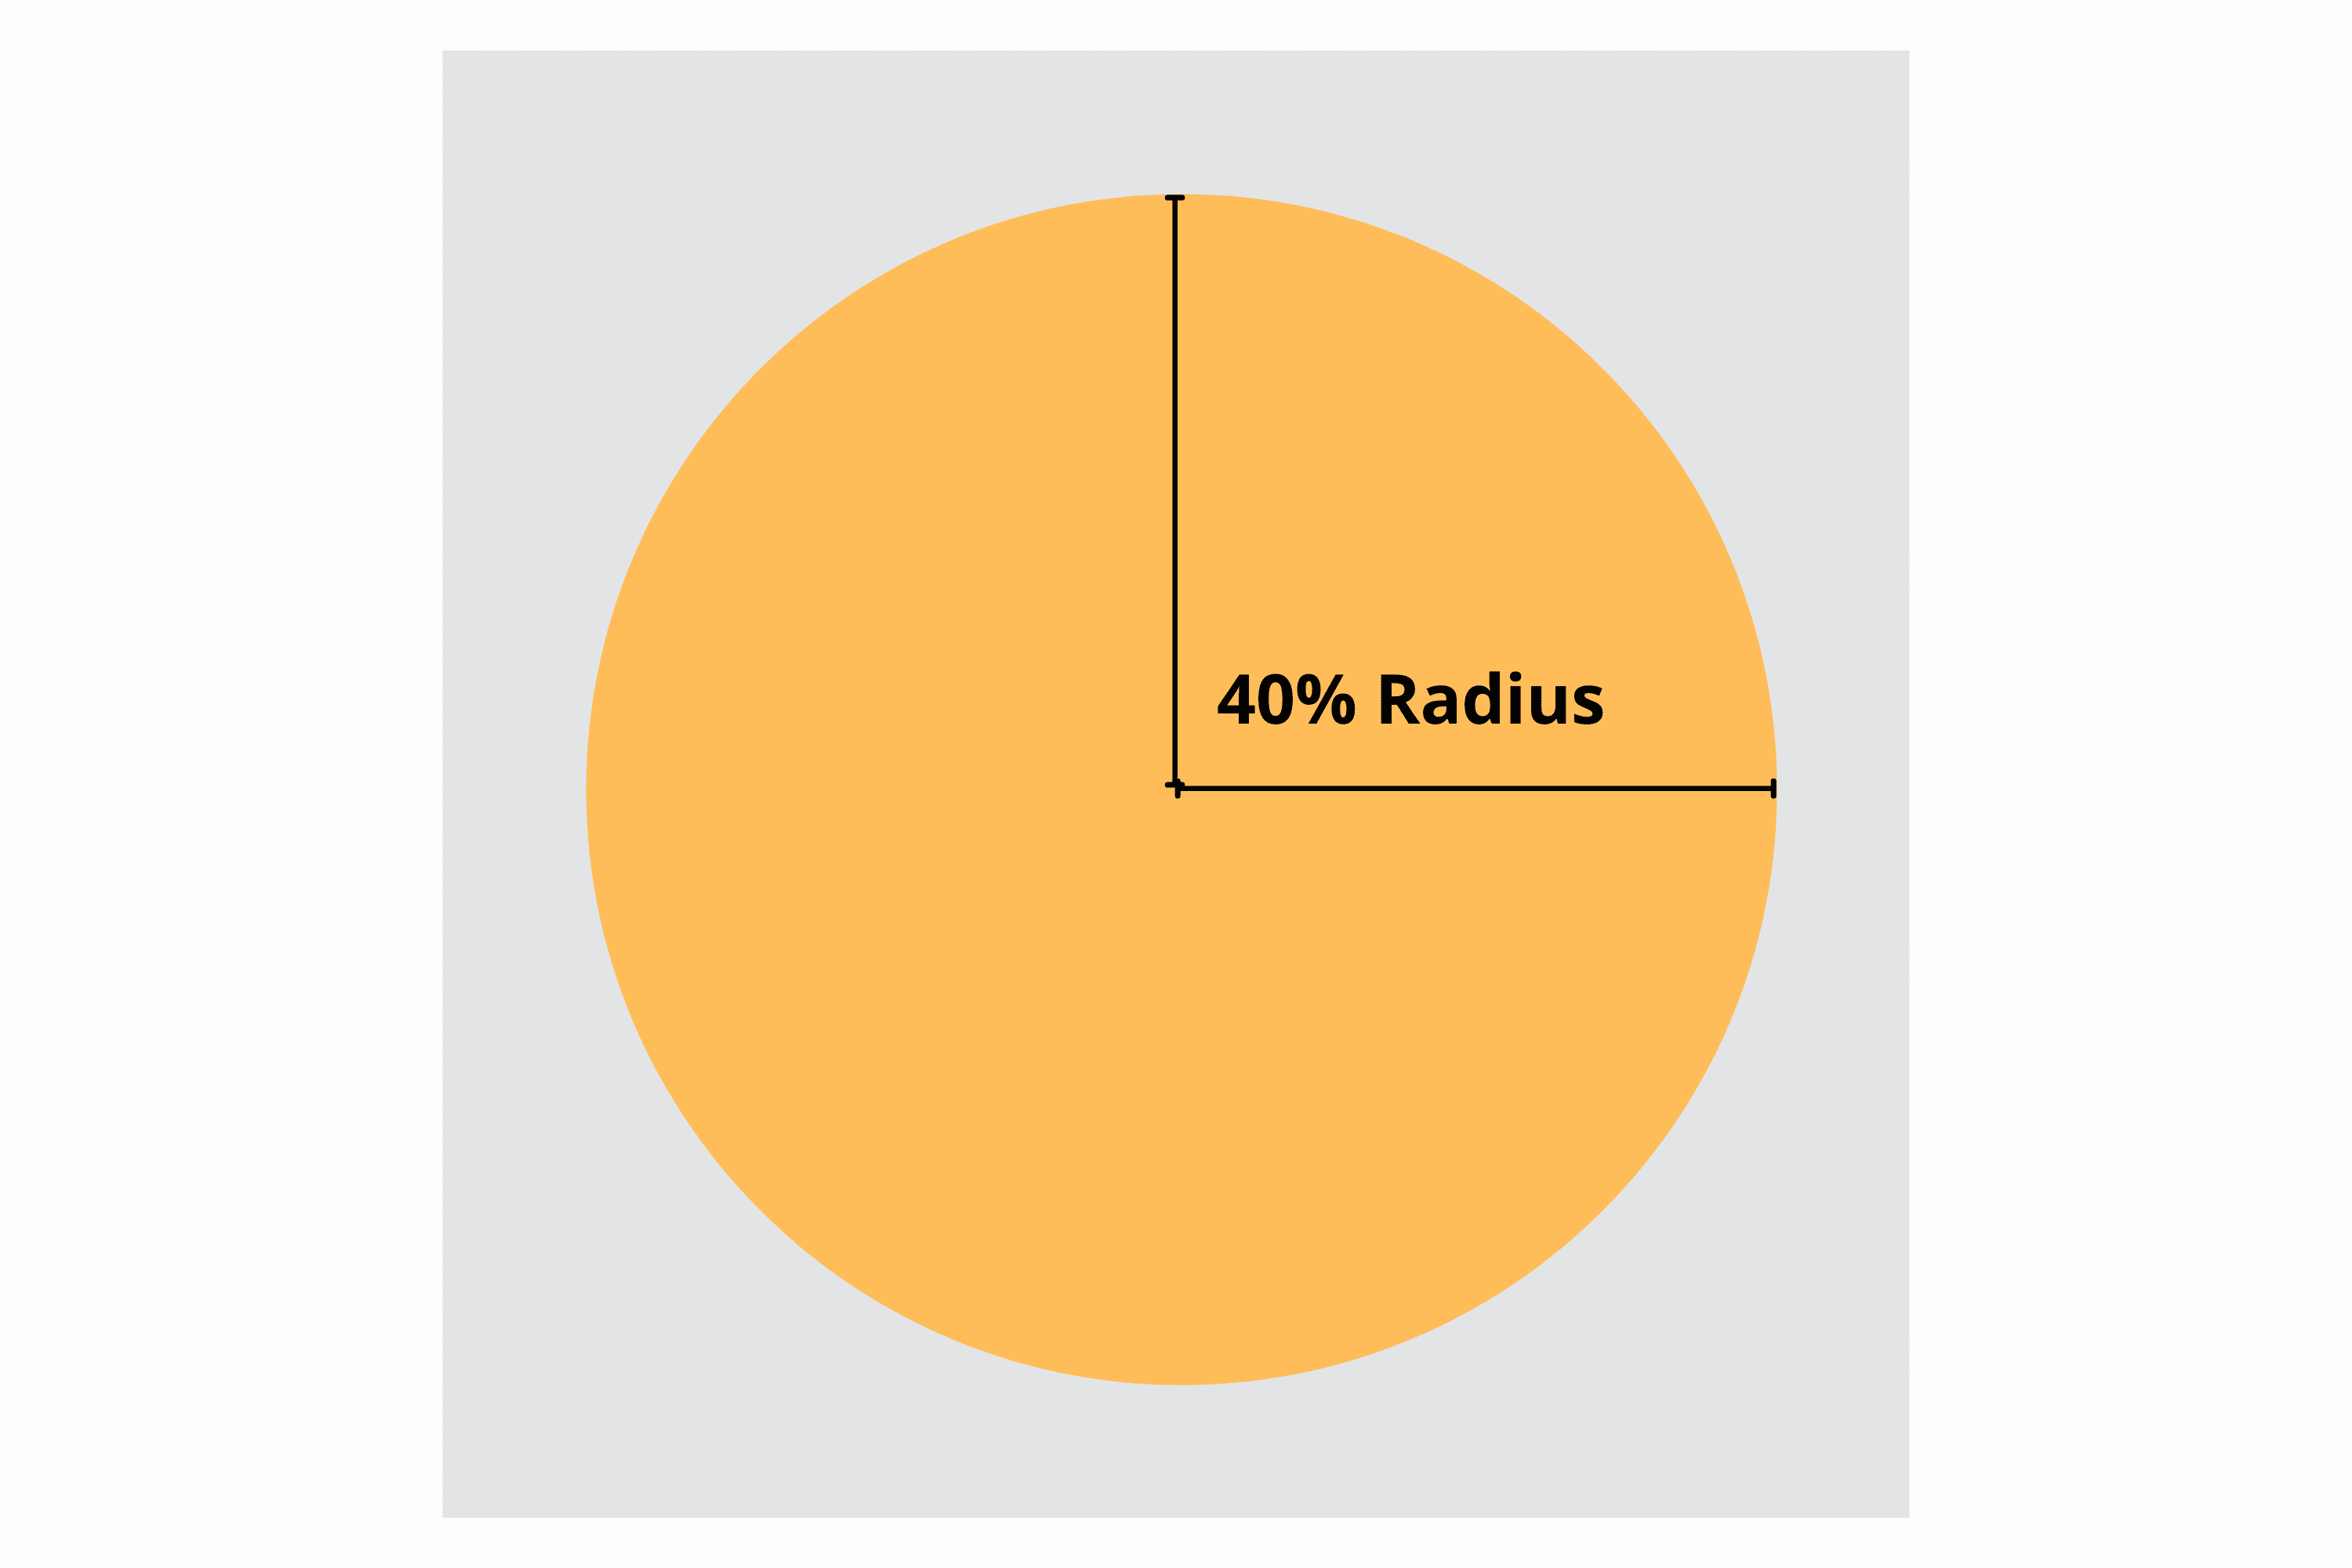 方形图标内以 40% 半径为中心的圆圈表示的安全区域